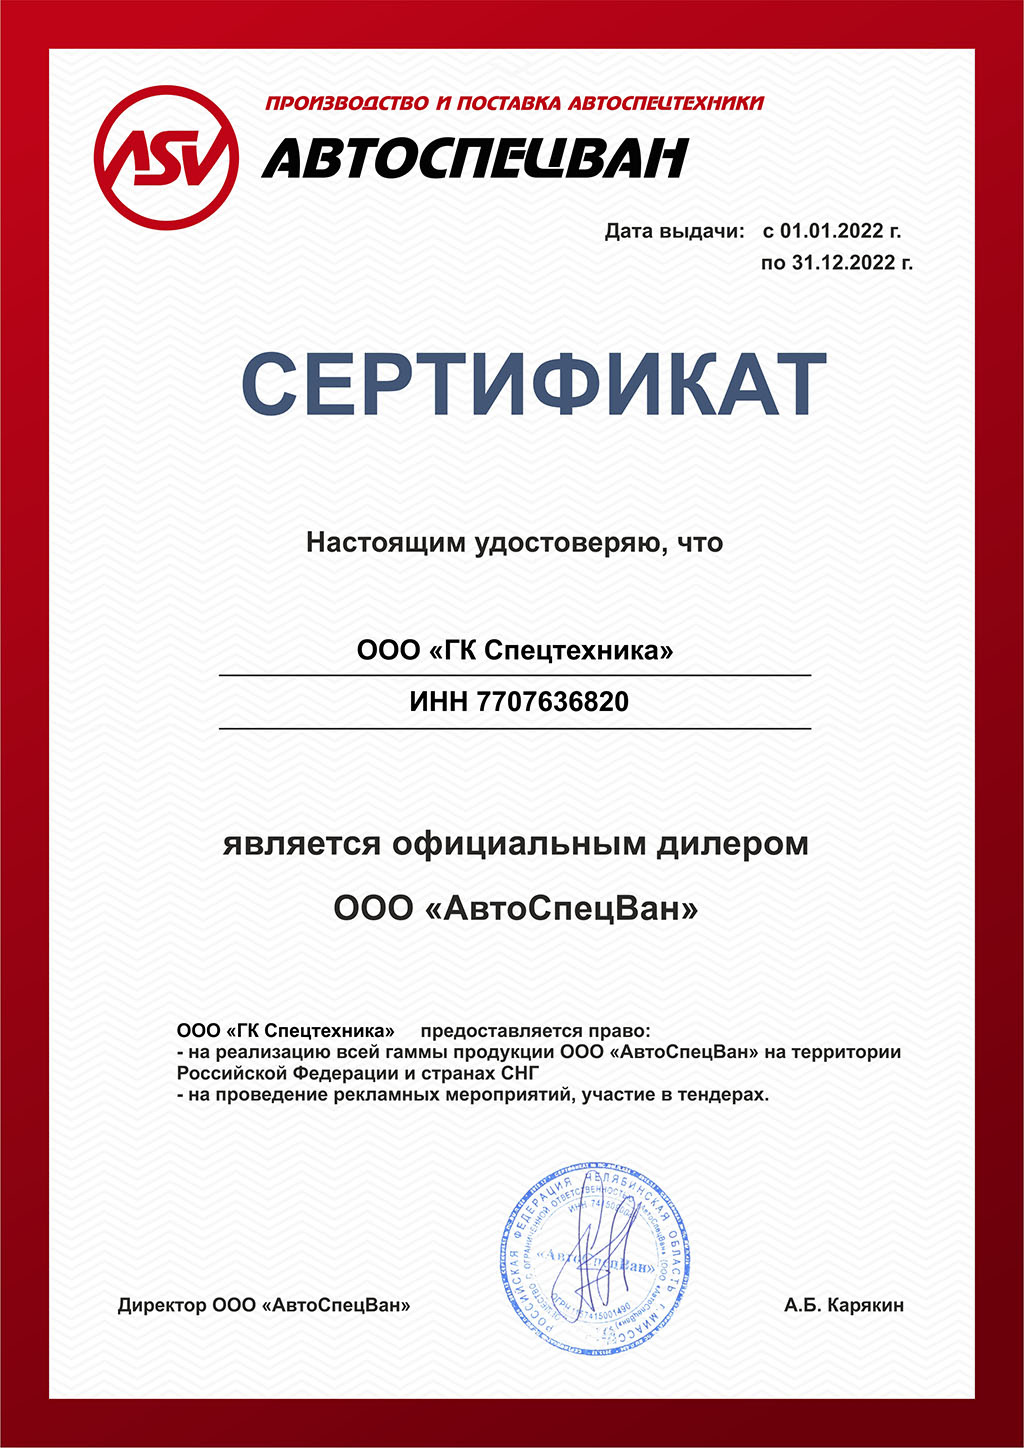 Сертификат дилера ООО «АвтоСпецВан» 2022 г.